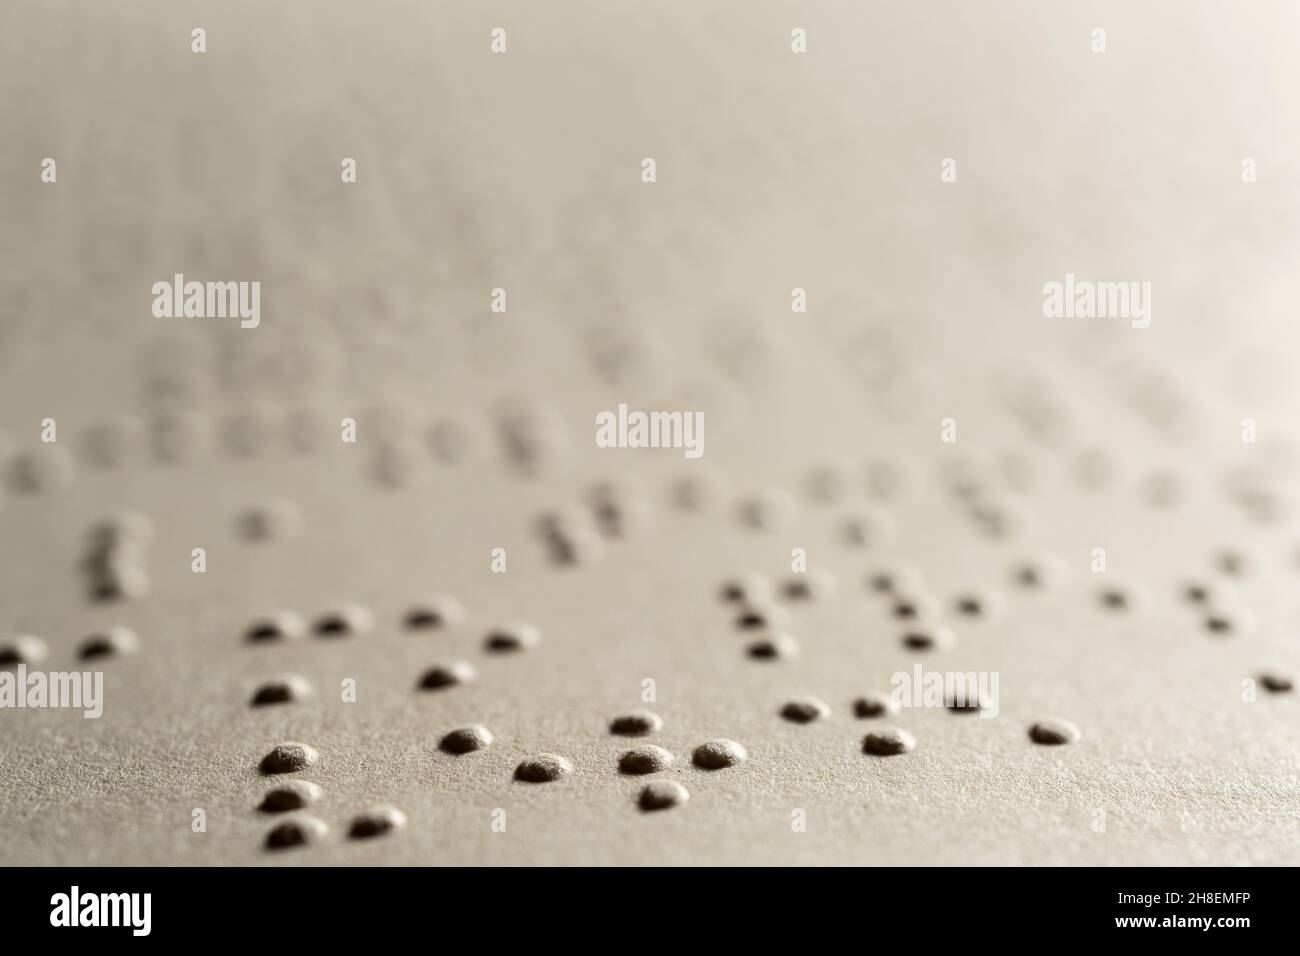 La page d'un livre écrit en braille, le système de lecture tactile en relief pour les aveugles Banque D'Images